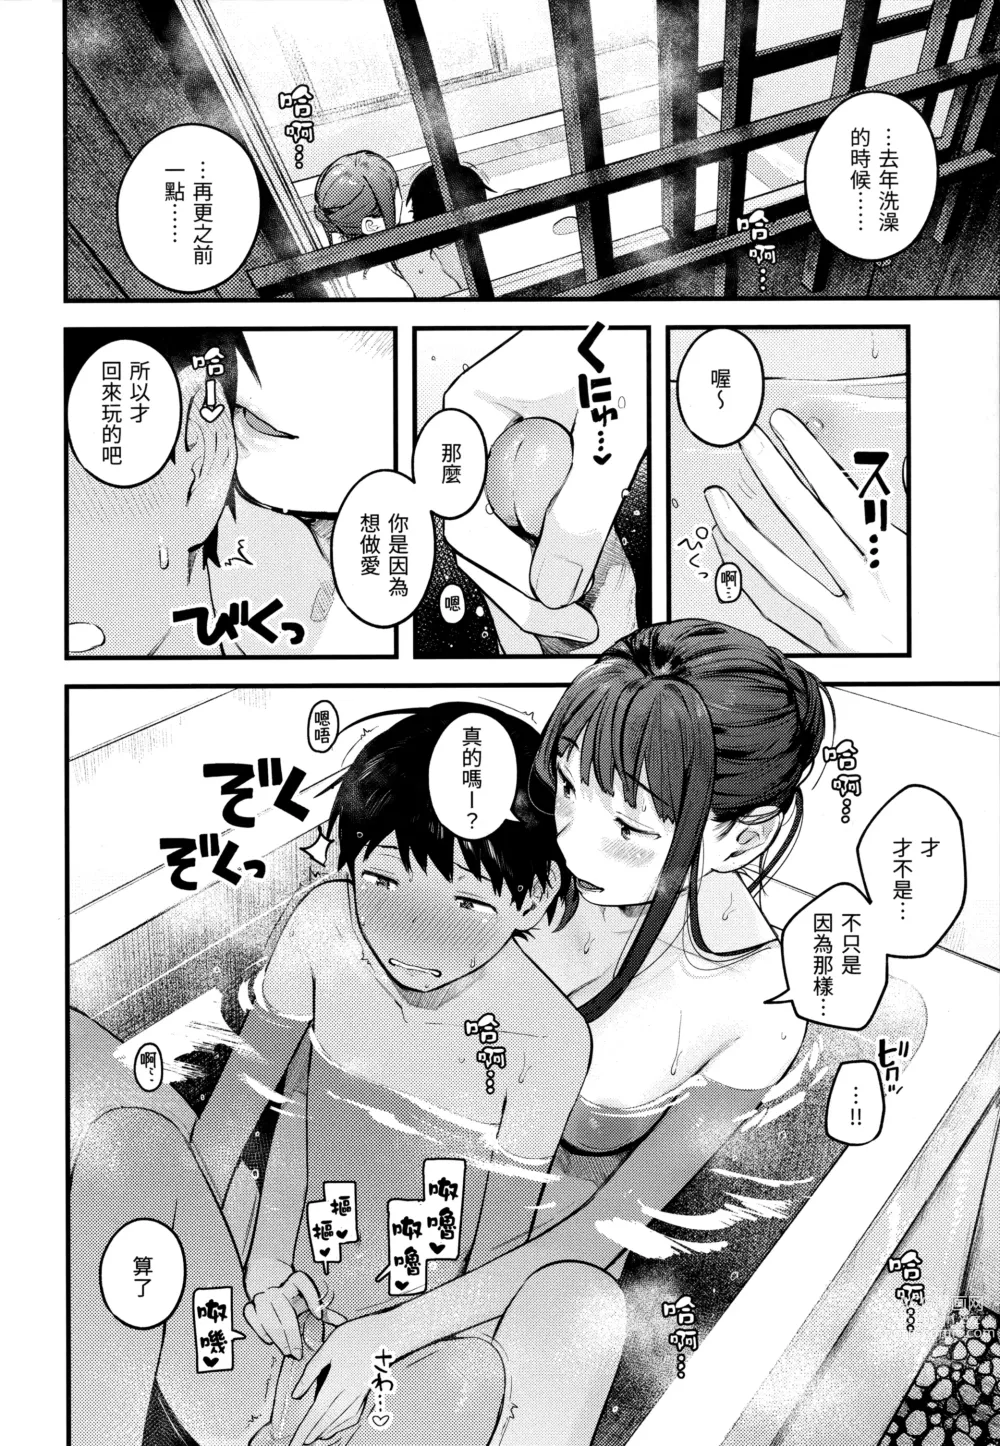 Page 168 of doujinshi Omochikaeri (decensored)